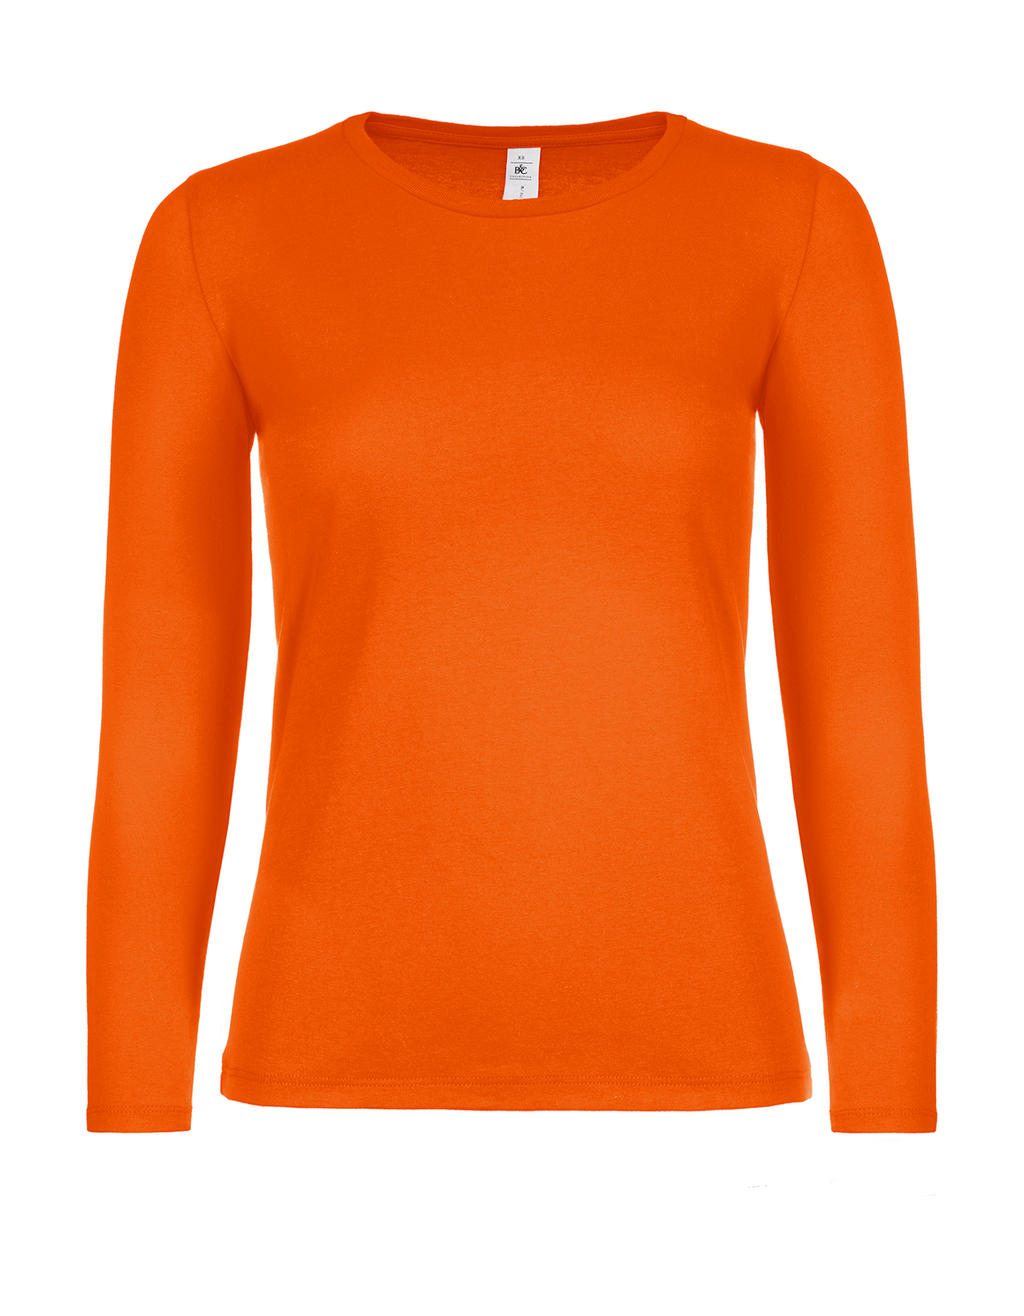 Dámske tričko s dlhými rukávmi #E150 - orange